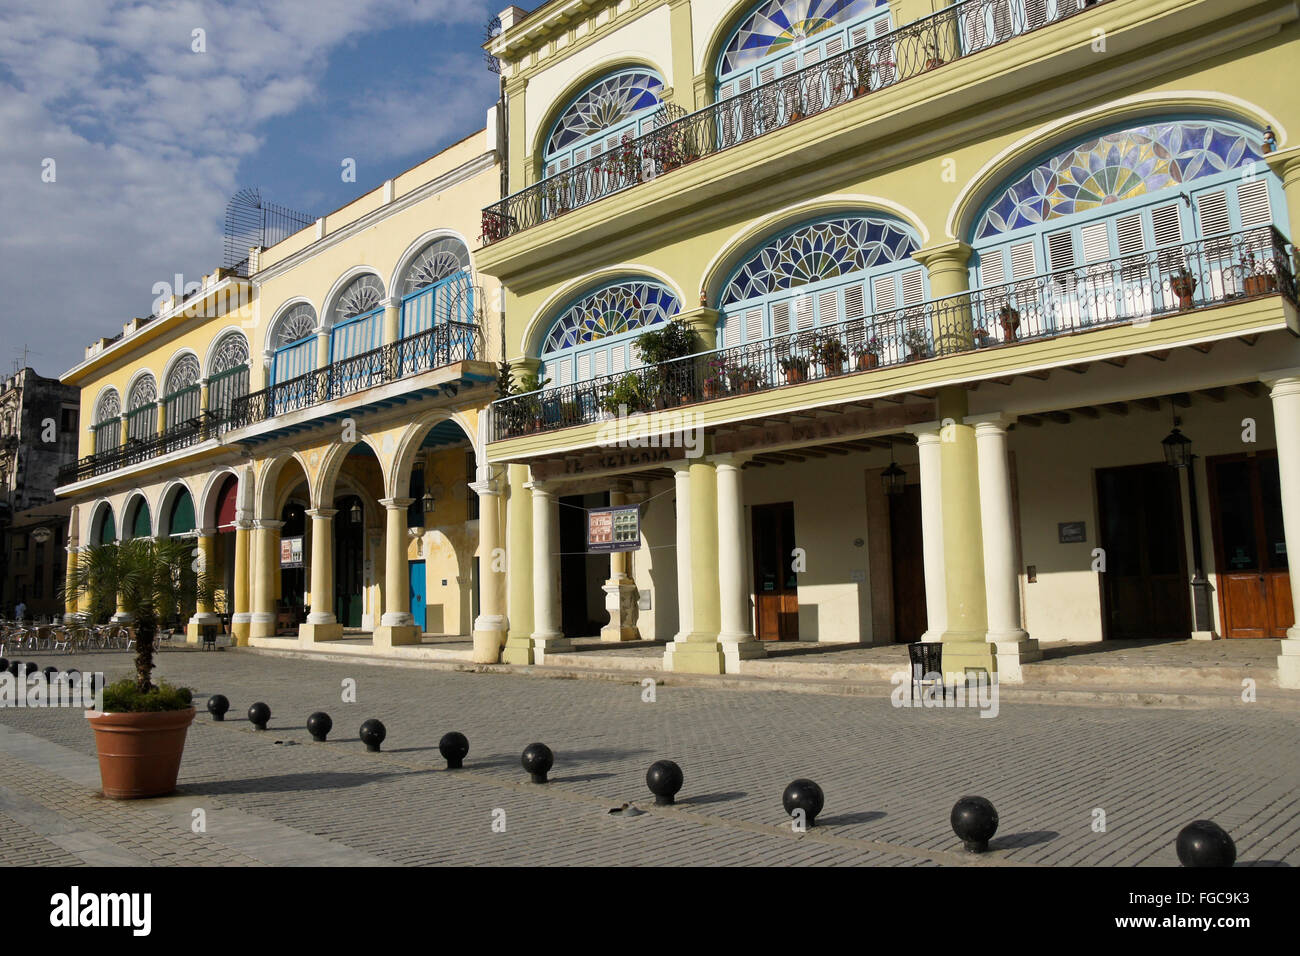 Bâtiments magnifiquement rénové sur la Plaza Vieja, Habana Vieja (la vieille Havane), Cuba Banque D'Images